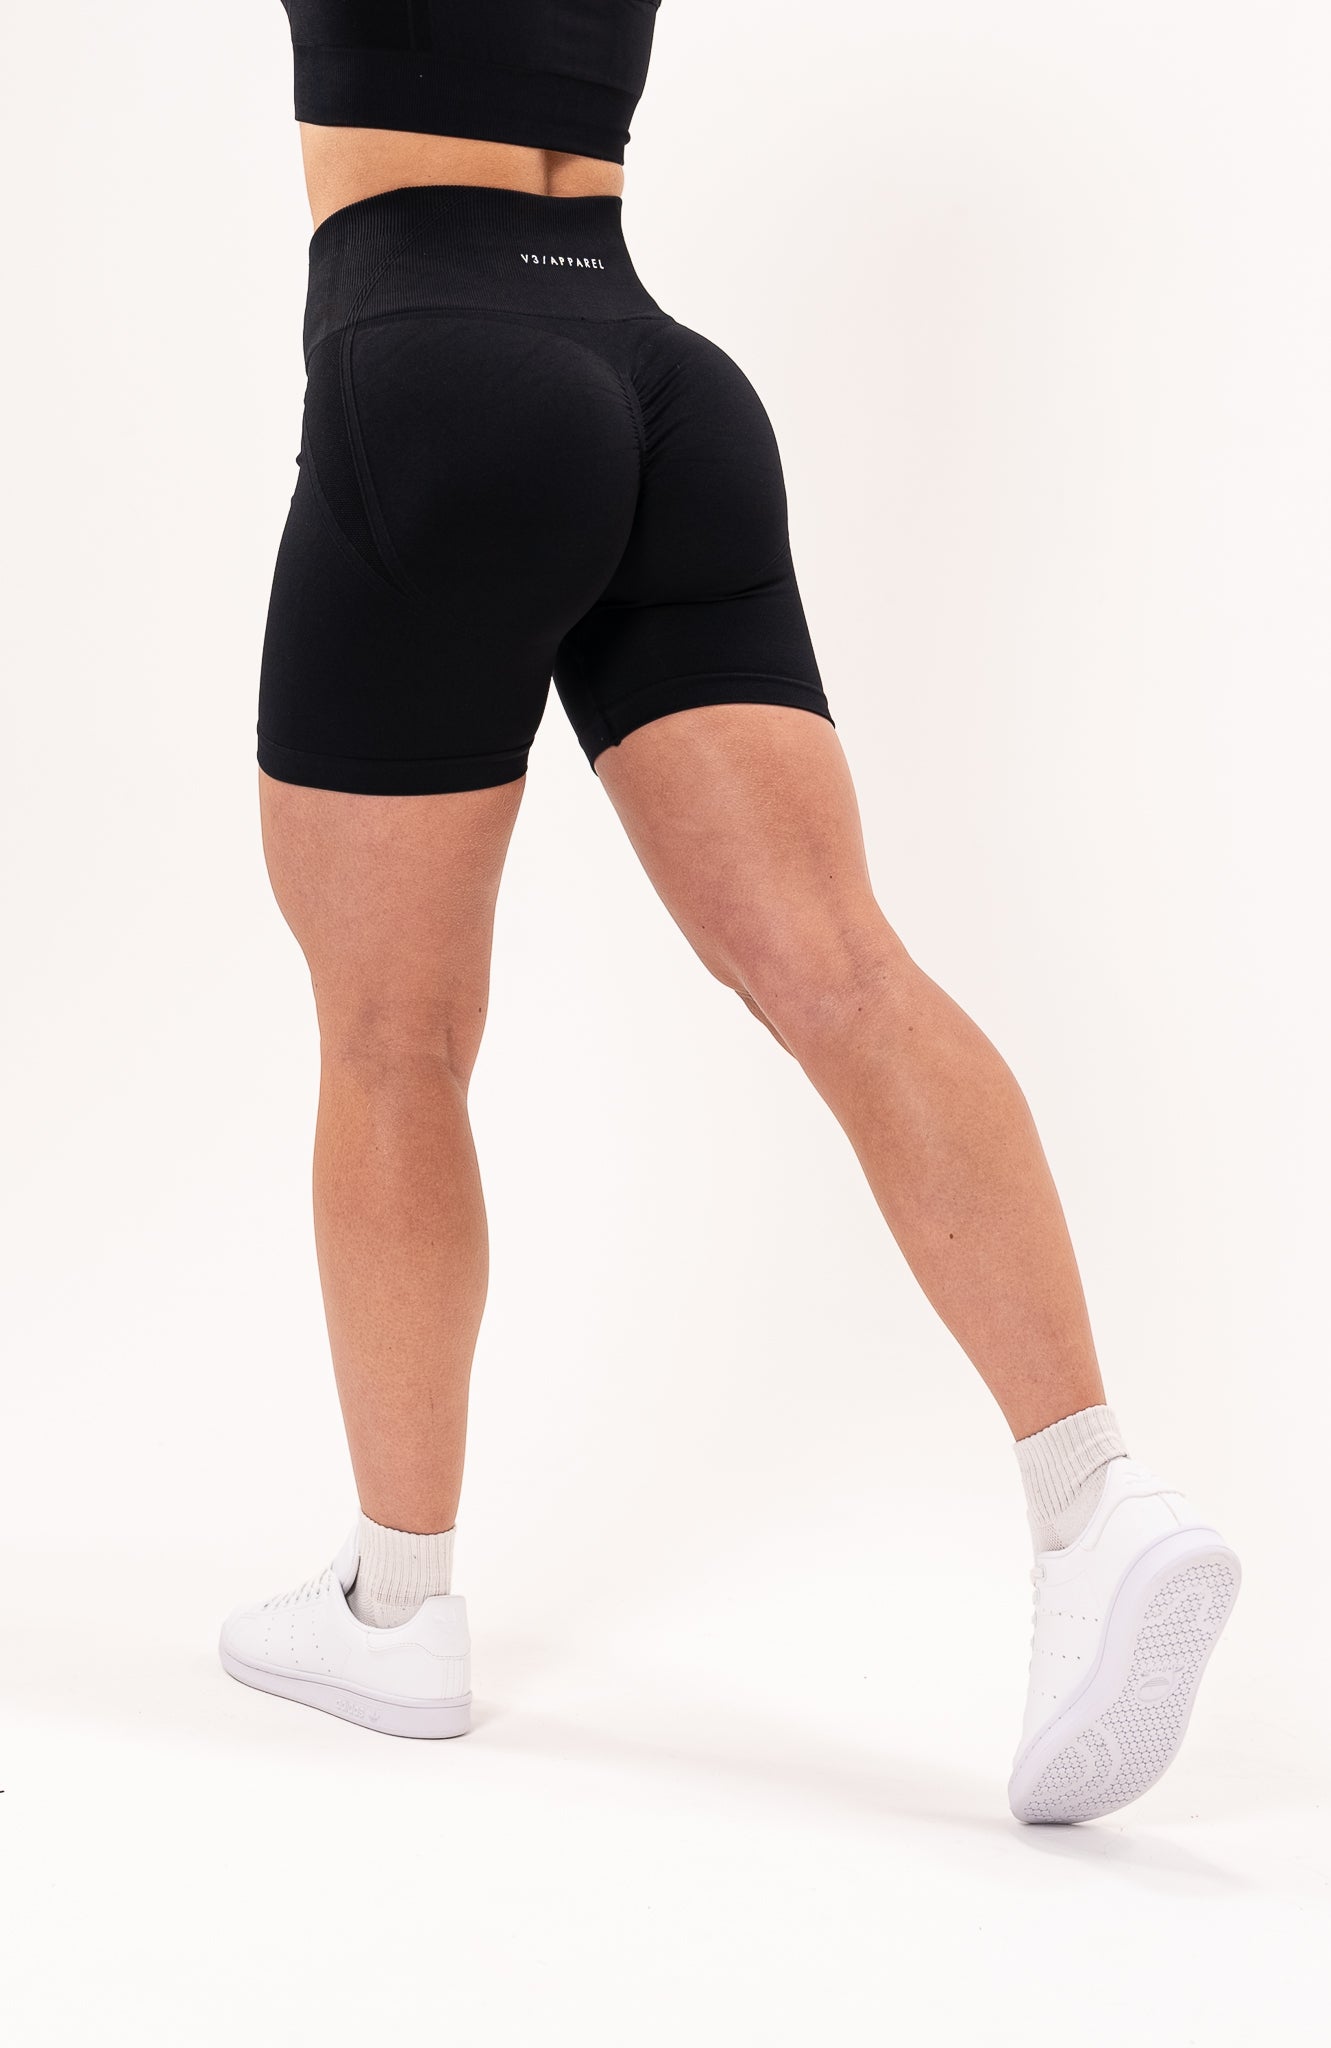 Evercute Gym Shorts Set for Women High Waist Tummy Control Butt